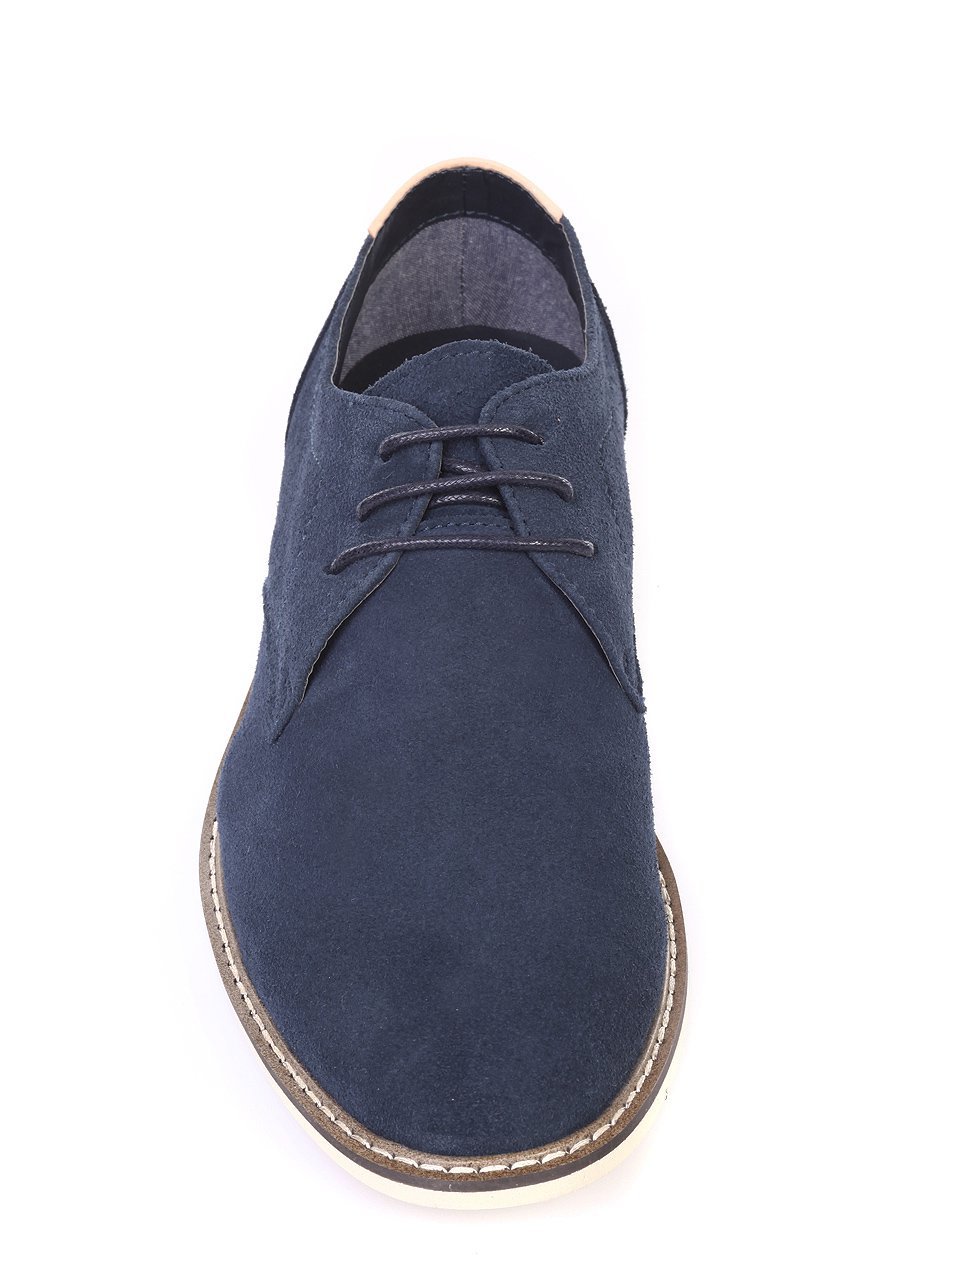 Ежедневни мъжки обувки от естествен велур в синьо 7N-18132 navy